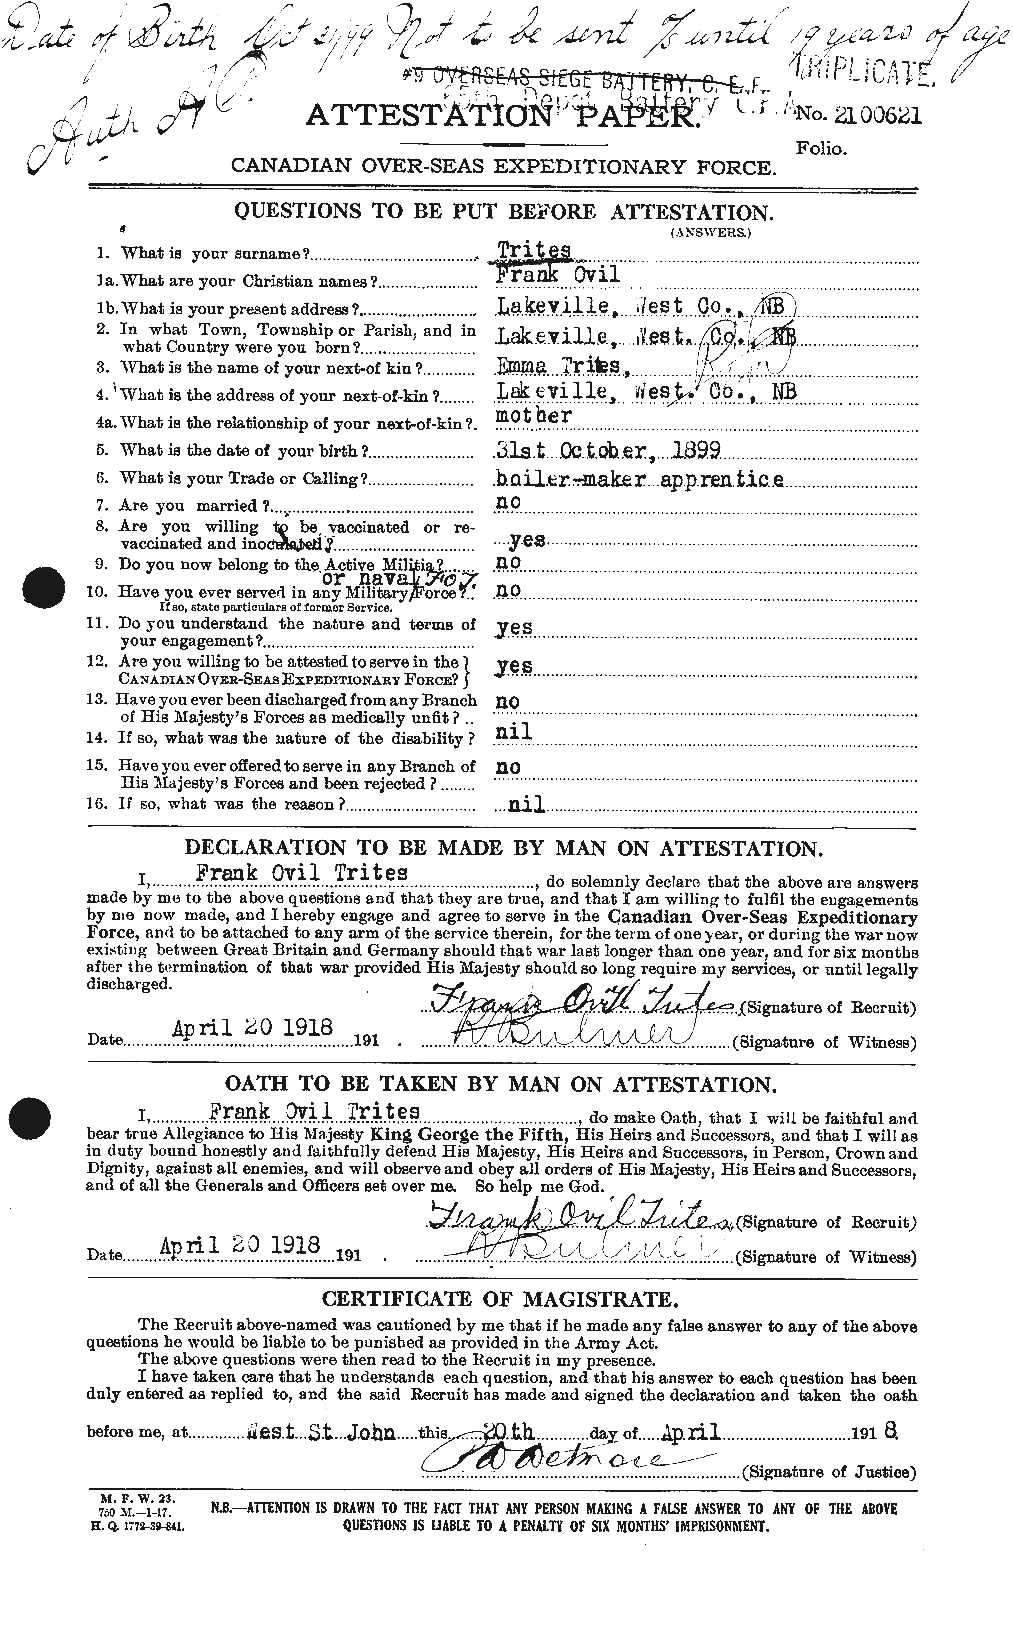 Dossiers du Personnel de la Première Guerre mondiale - CEC 640148a